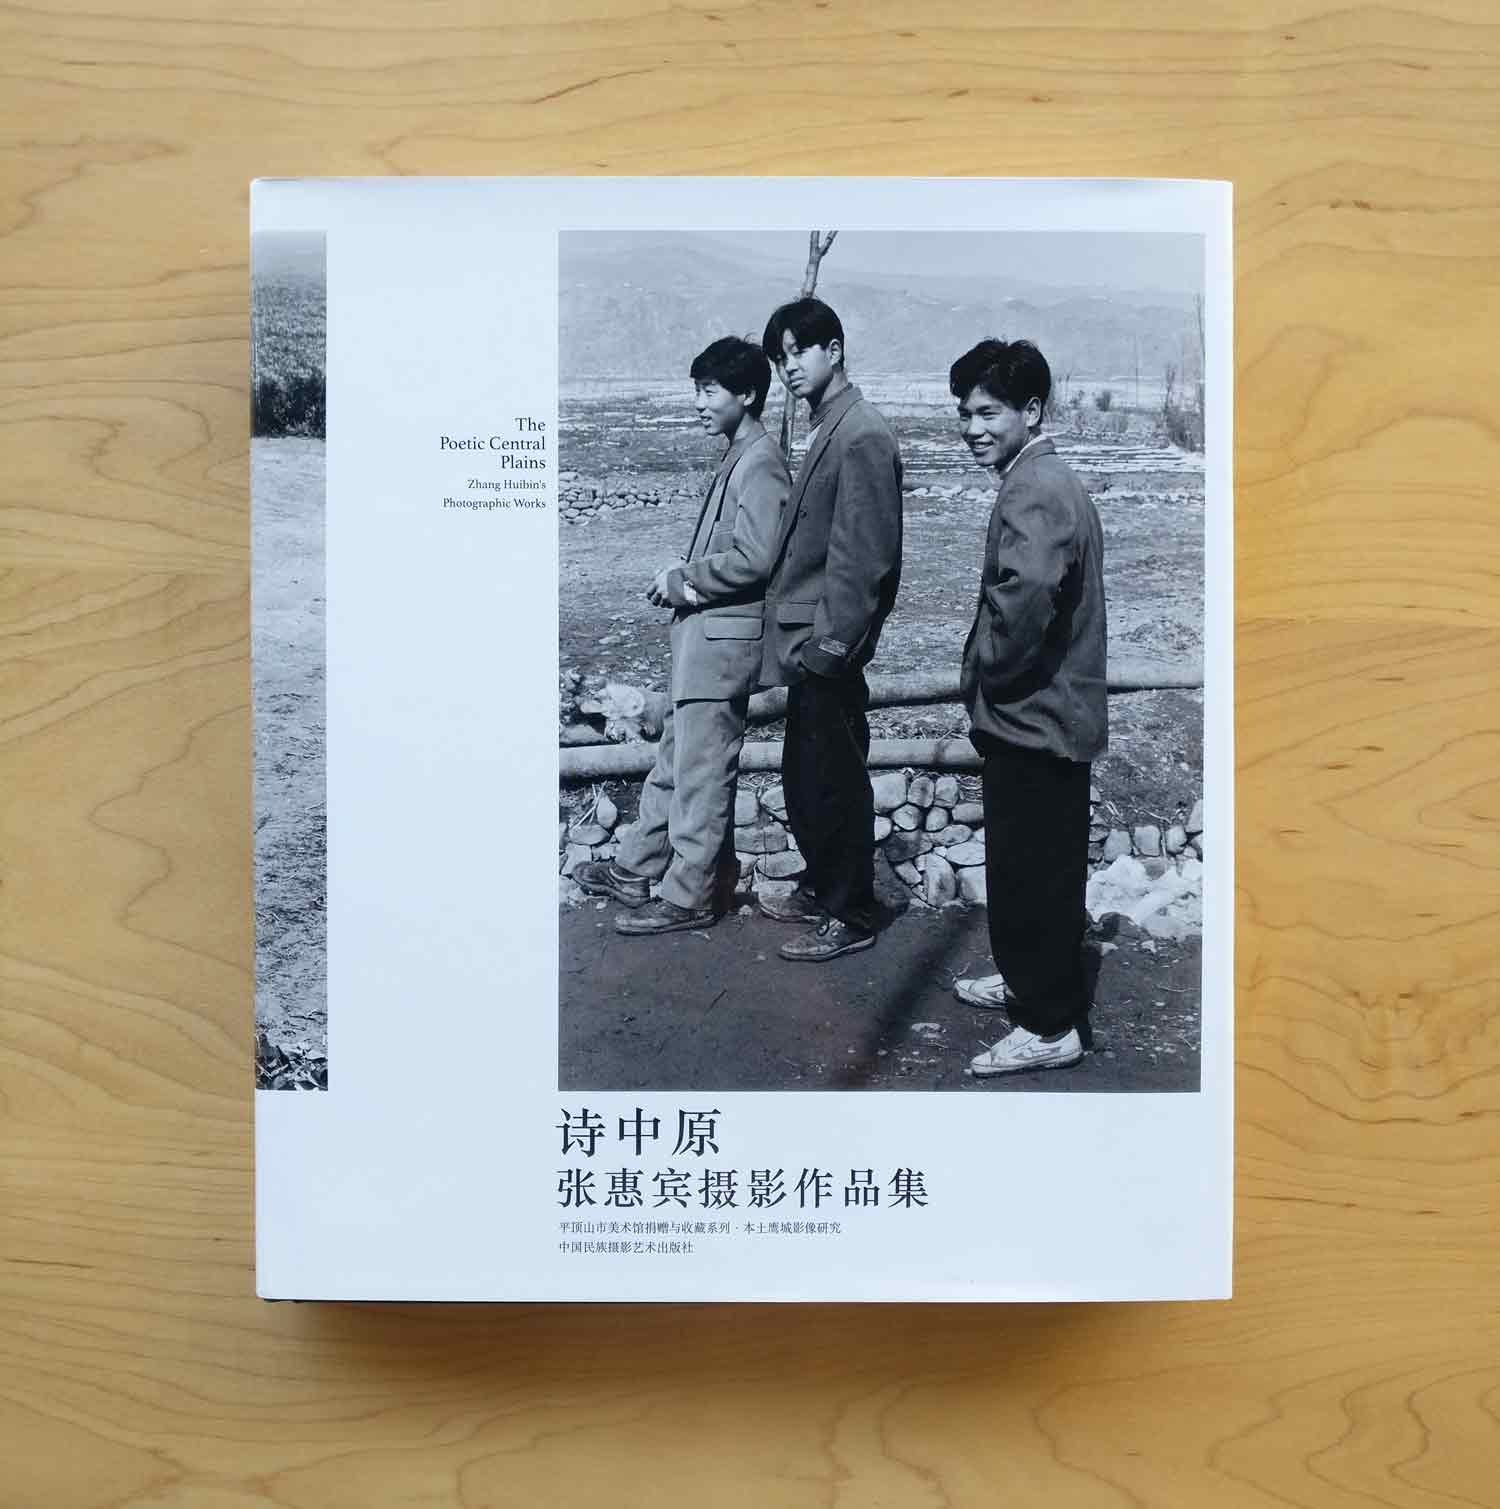 《诗中原》张惠宾摄影作品集/中国民族摄影艺术出版社